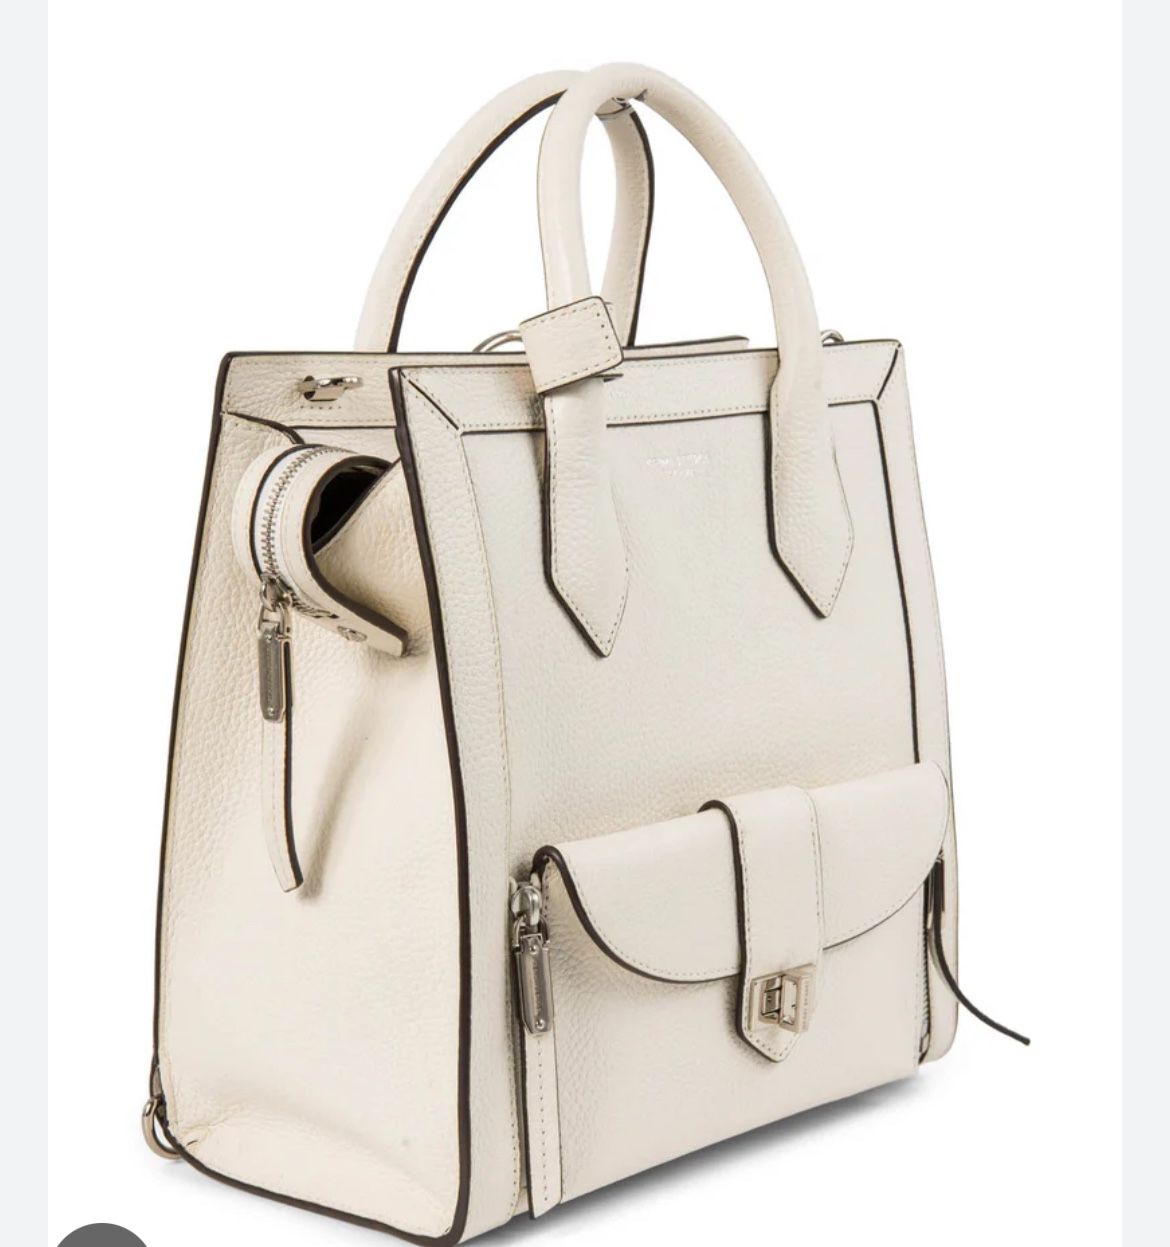 Henri Bendel Leather Top Handle Bag Backpack White